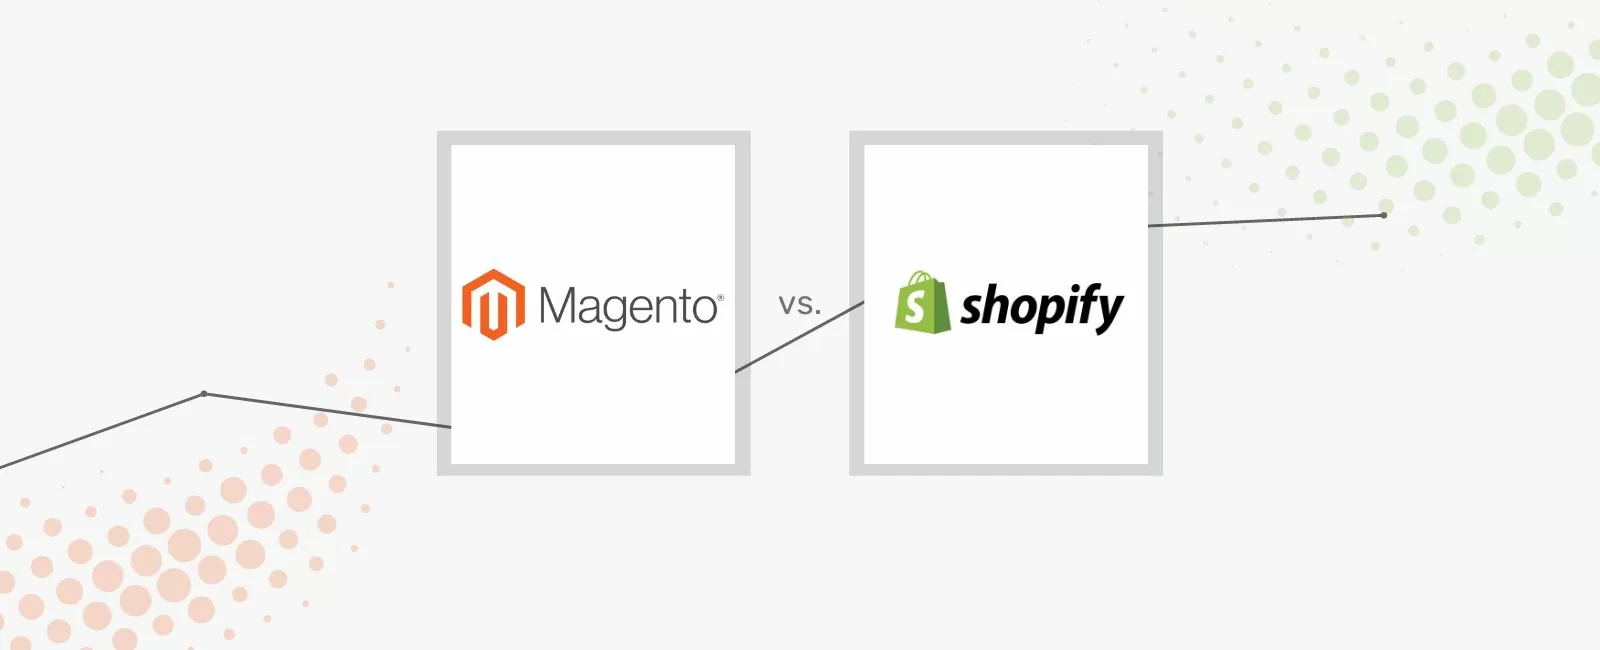 Magento & Shopify gegenübergestellt im Vergleich